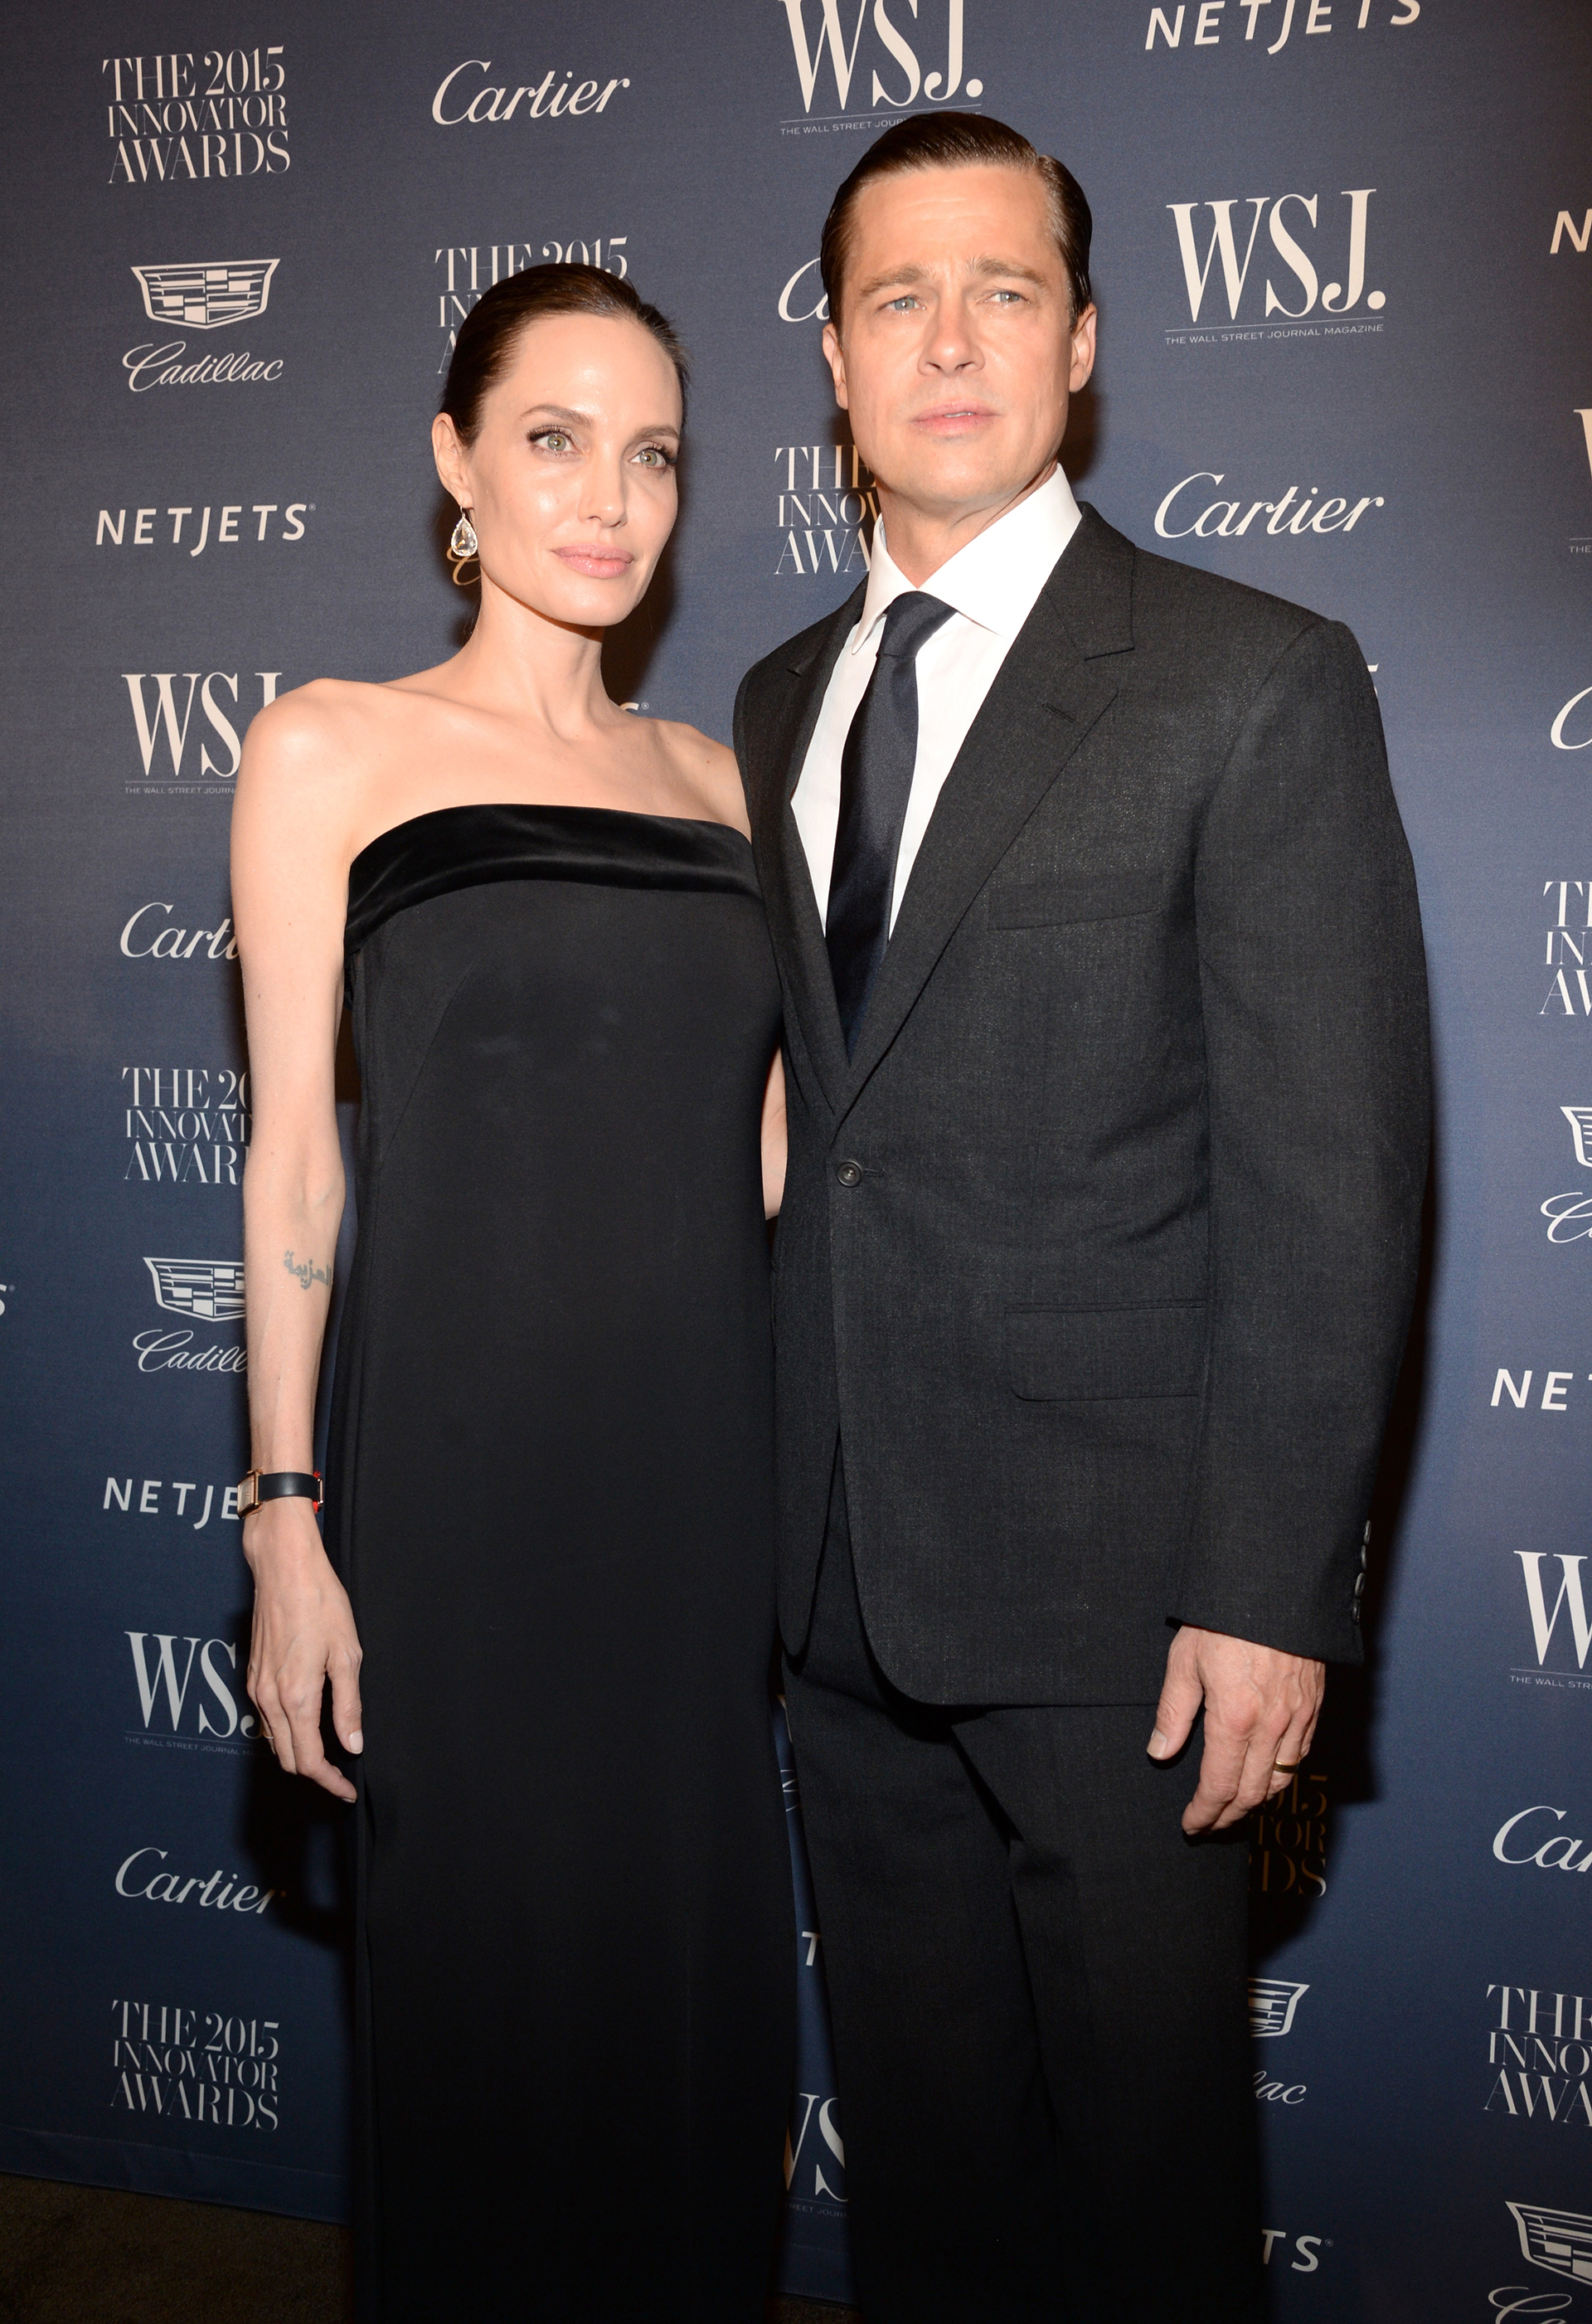 Pitt aseguró que se había firmado un acuerdo para que no se vendieran sus partes sin el consentimiento del otro. Jolie negó esta afirmación
(Photo by Kevin Mazur/Getty Images for WSJ. Magazine 2015 Innovator Awards)